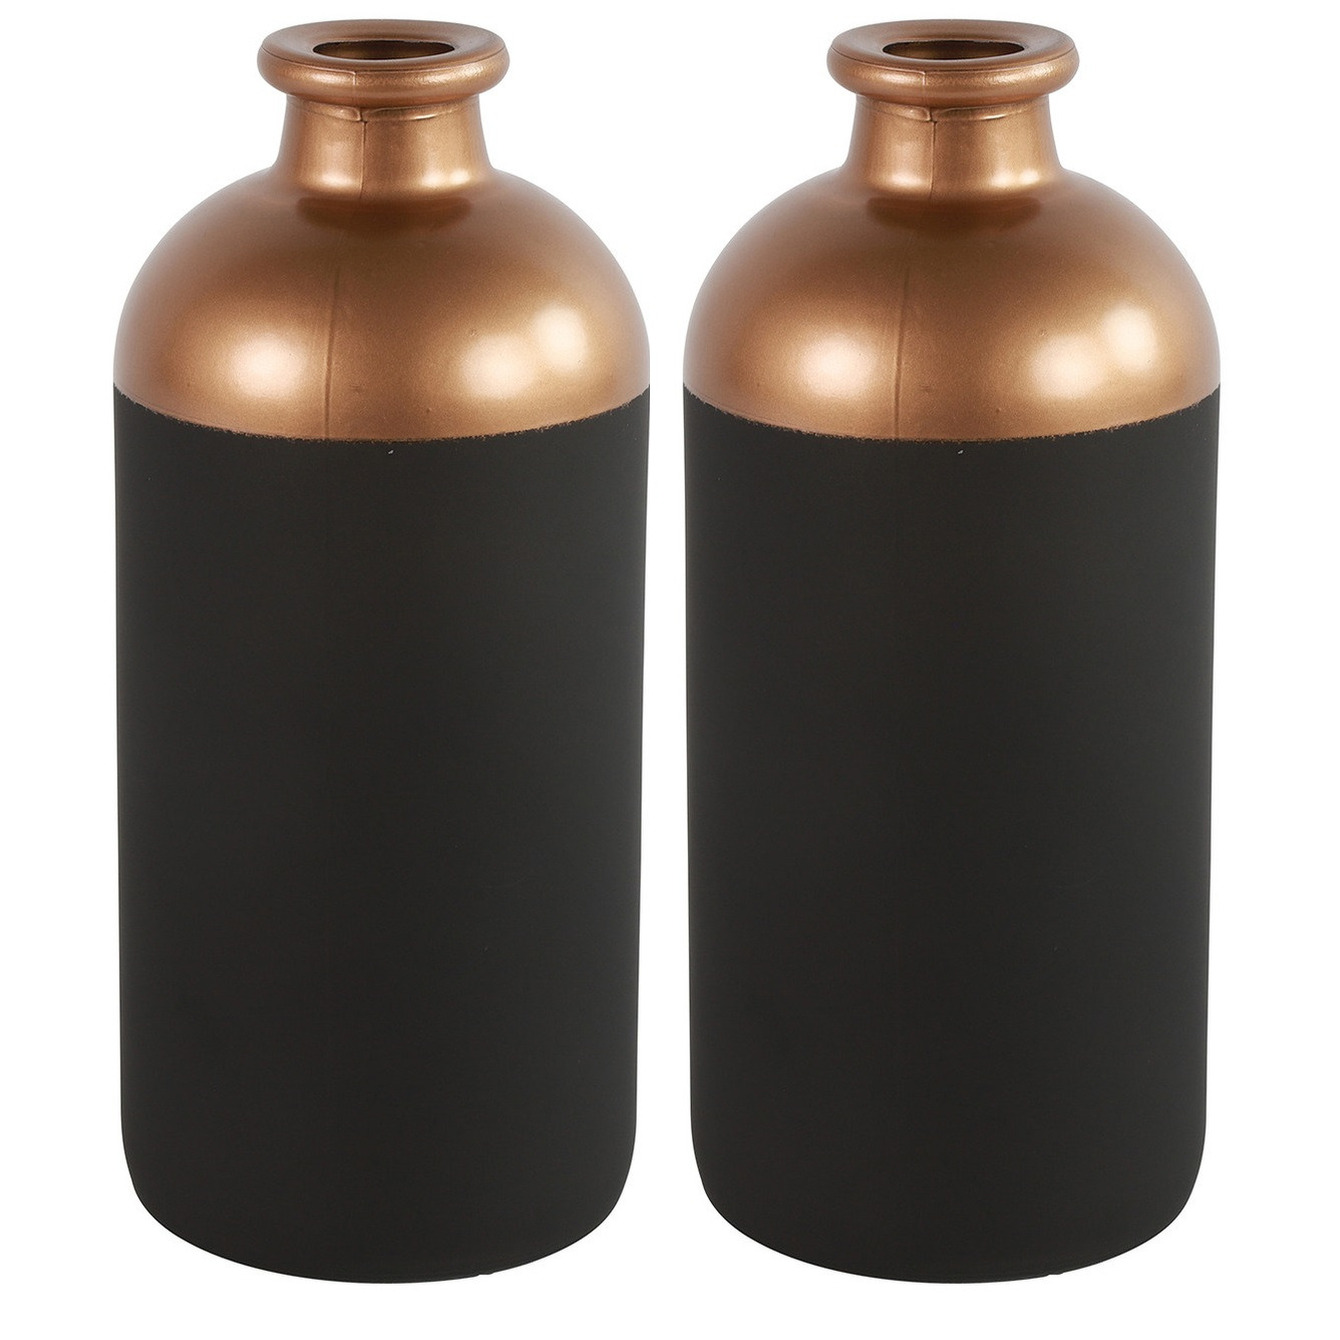 Countryfield Bloemen-deco vaas 2x zwart-koper glas luxe fles vorm D11 x H25 cm